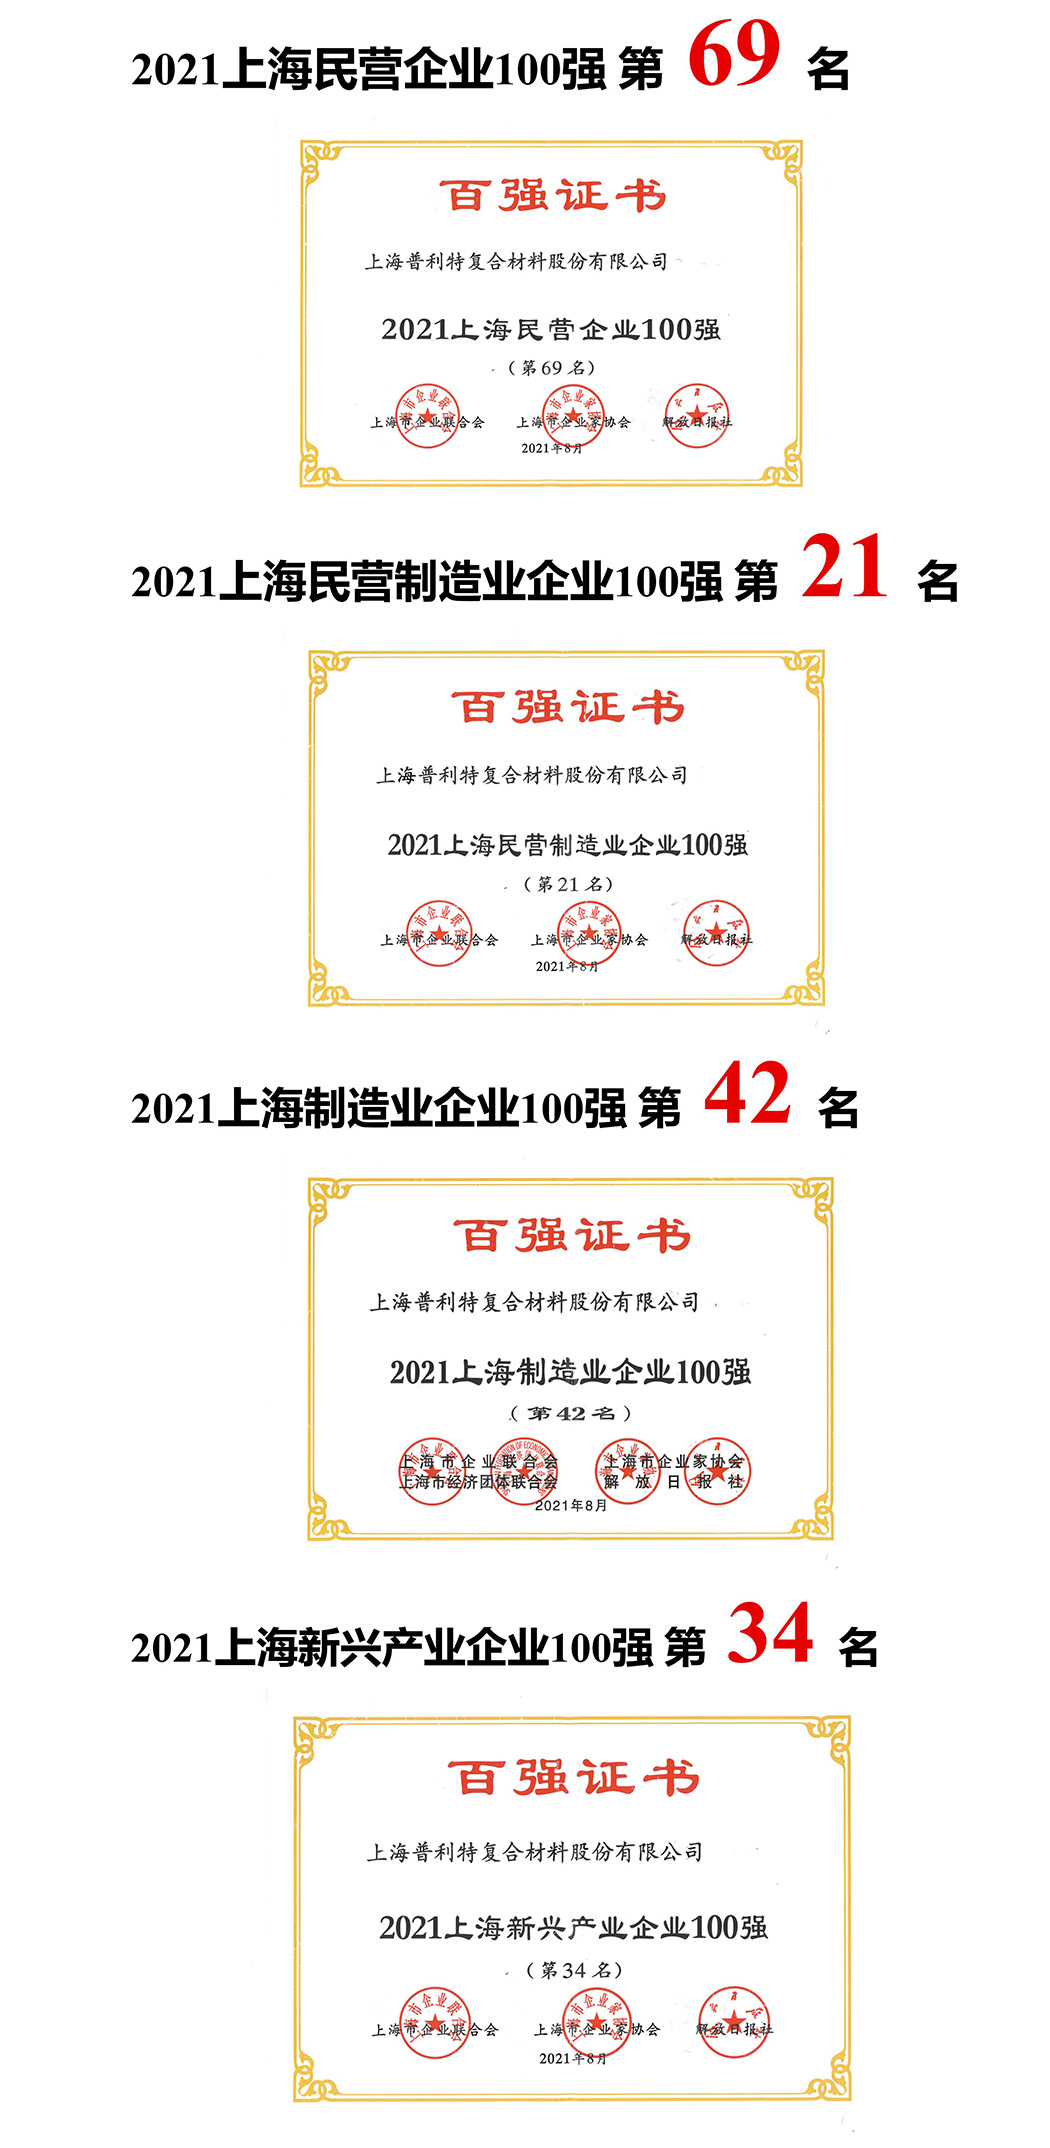 太阳集团0638登录网址荣登2021上海企业百强多项榜单！